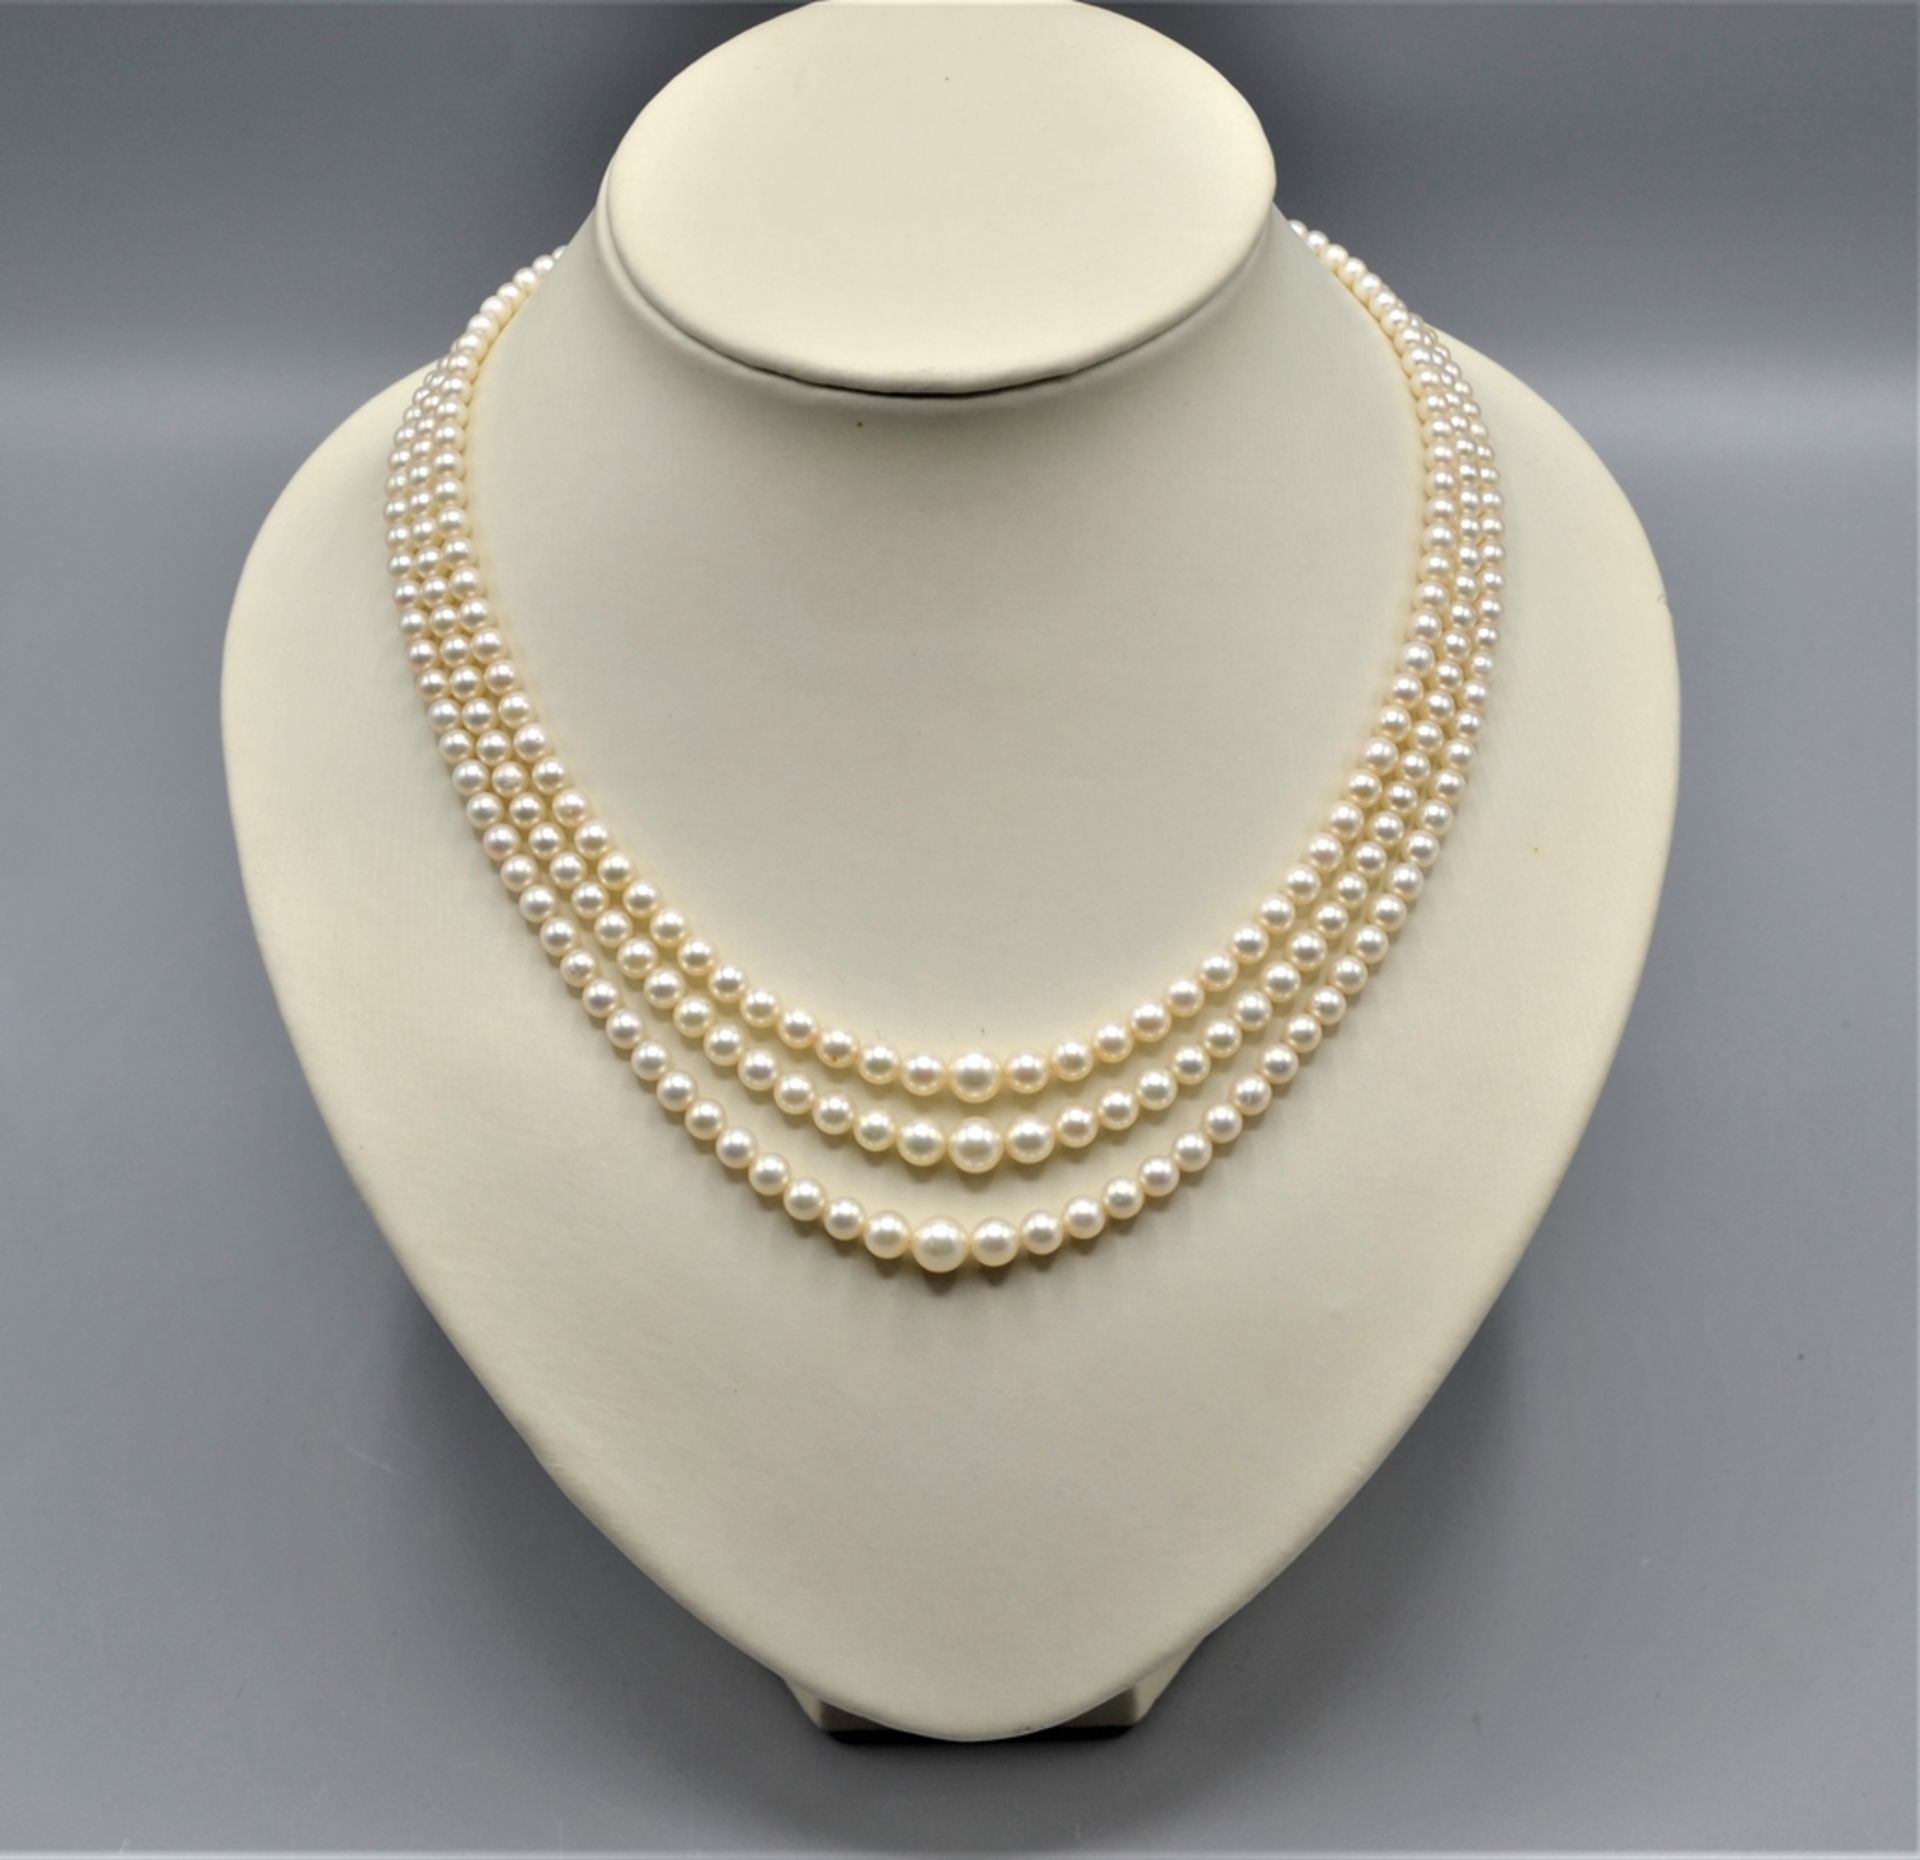 Perlenkette 3-reihig mit 585 Weißgoldverschluss, Perlengröße aufsteigend bis max. Ø 7 mm, ca. 43 cm